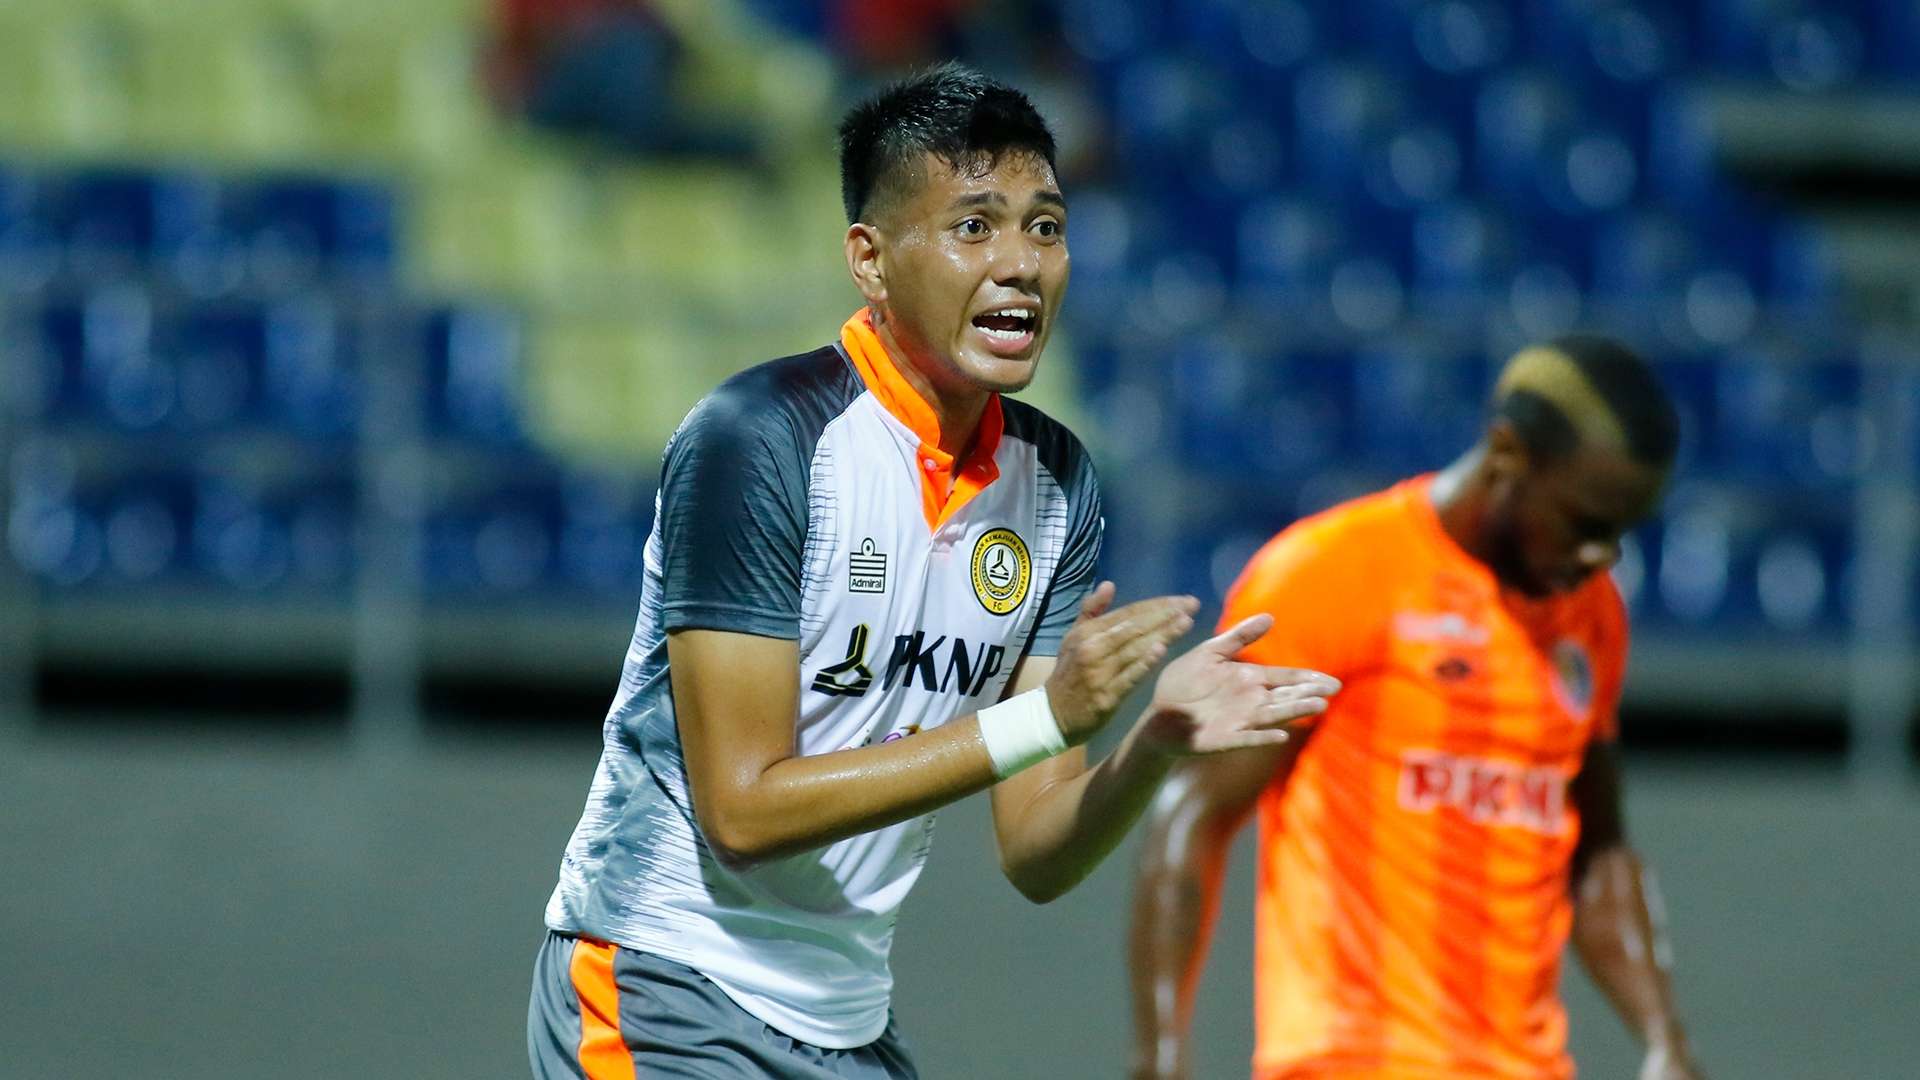 Syazwan Zaipol, PKNP FC v PKNS FC, Malaysia Super League, 25 Jun 2019